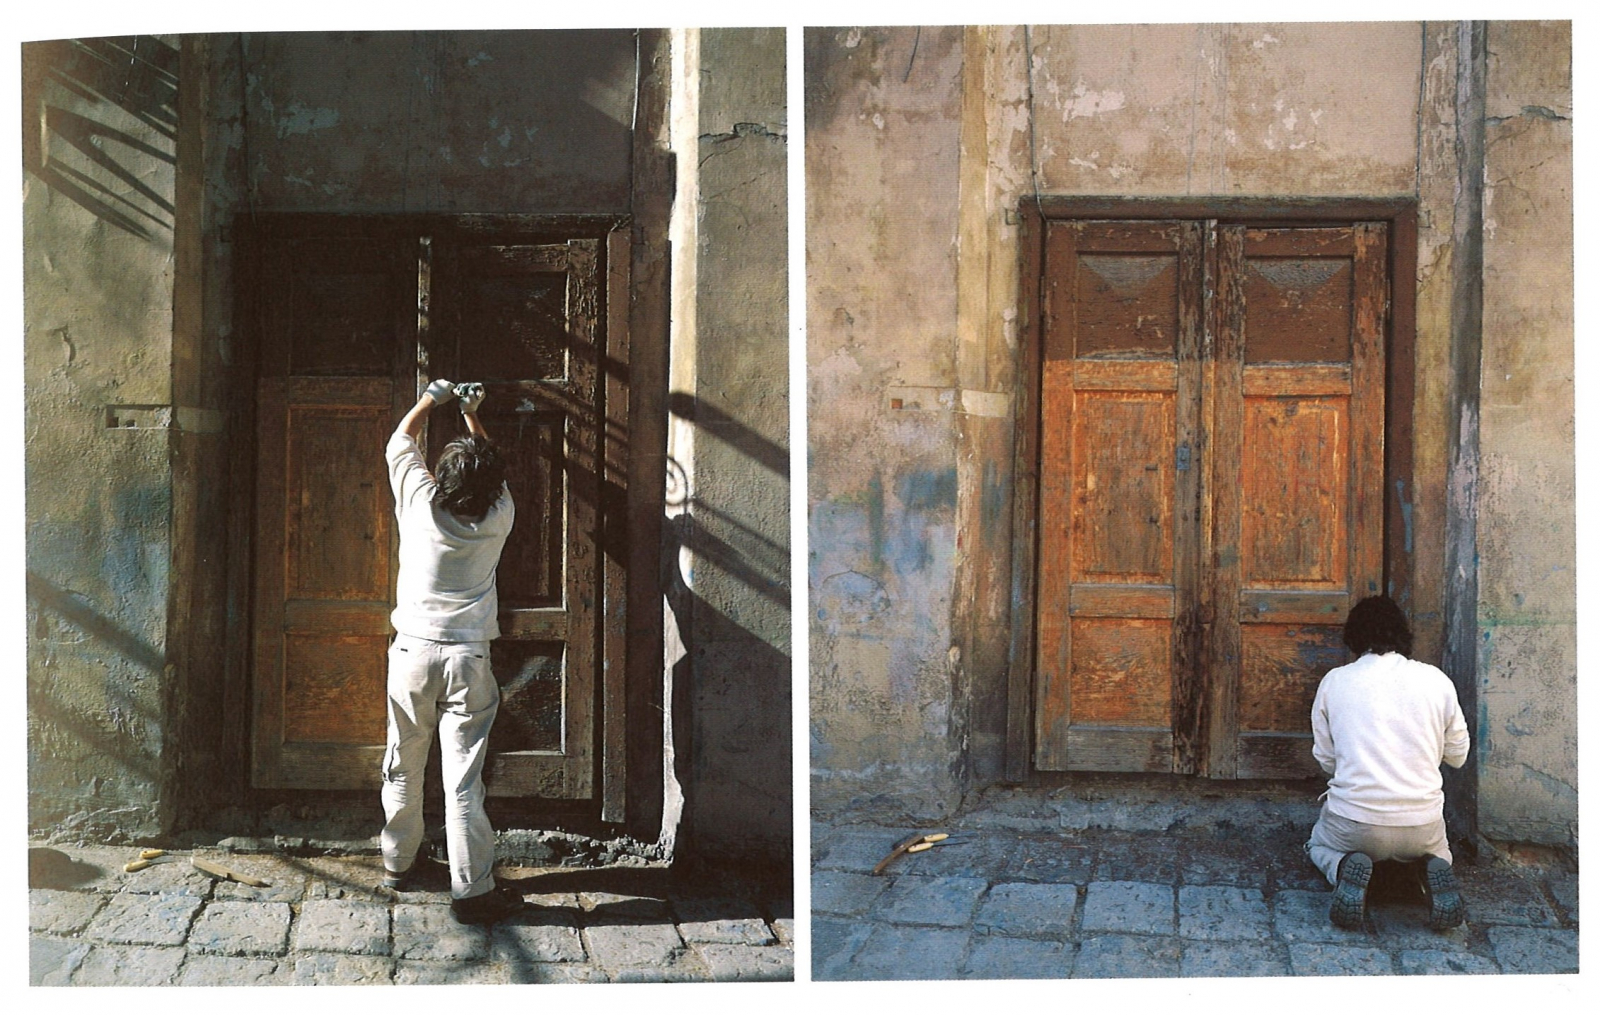 Regis Perray, Na miarę człowieka. Drzwi Teatru Starego w Lublinie, dokumentacja fotograficzna akcji artystycznej w przestrzeni Teatru Starego, 2003.